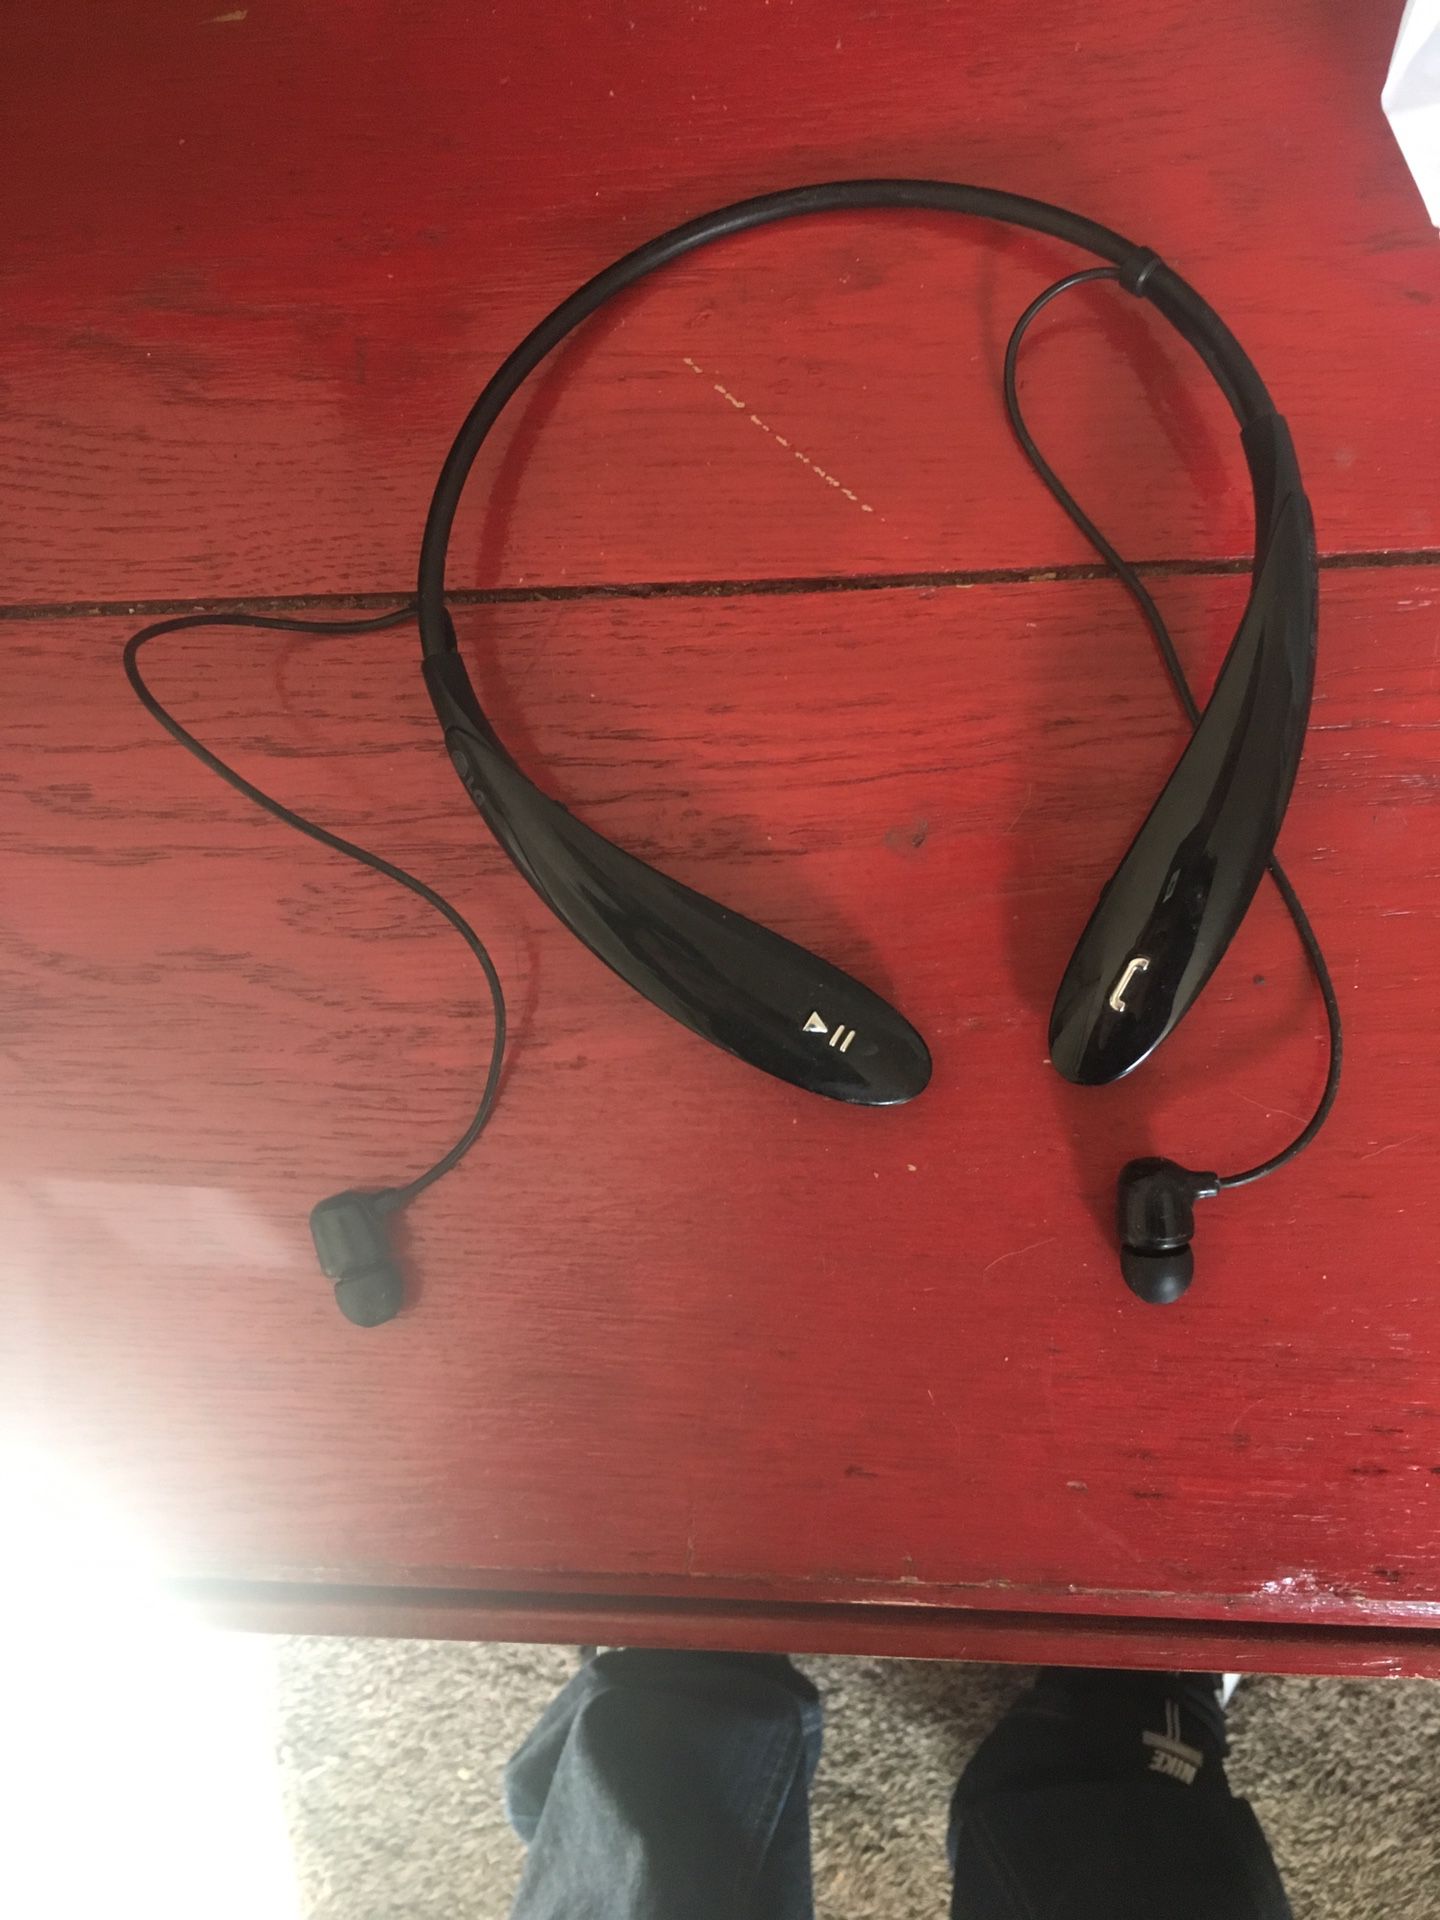 LG Bluetooth headphones